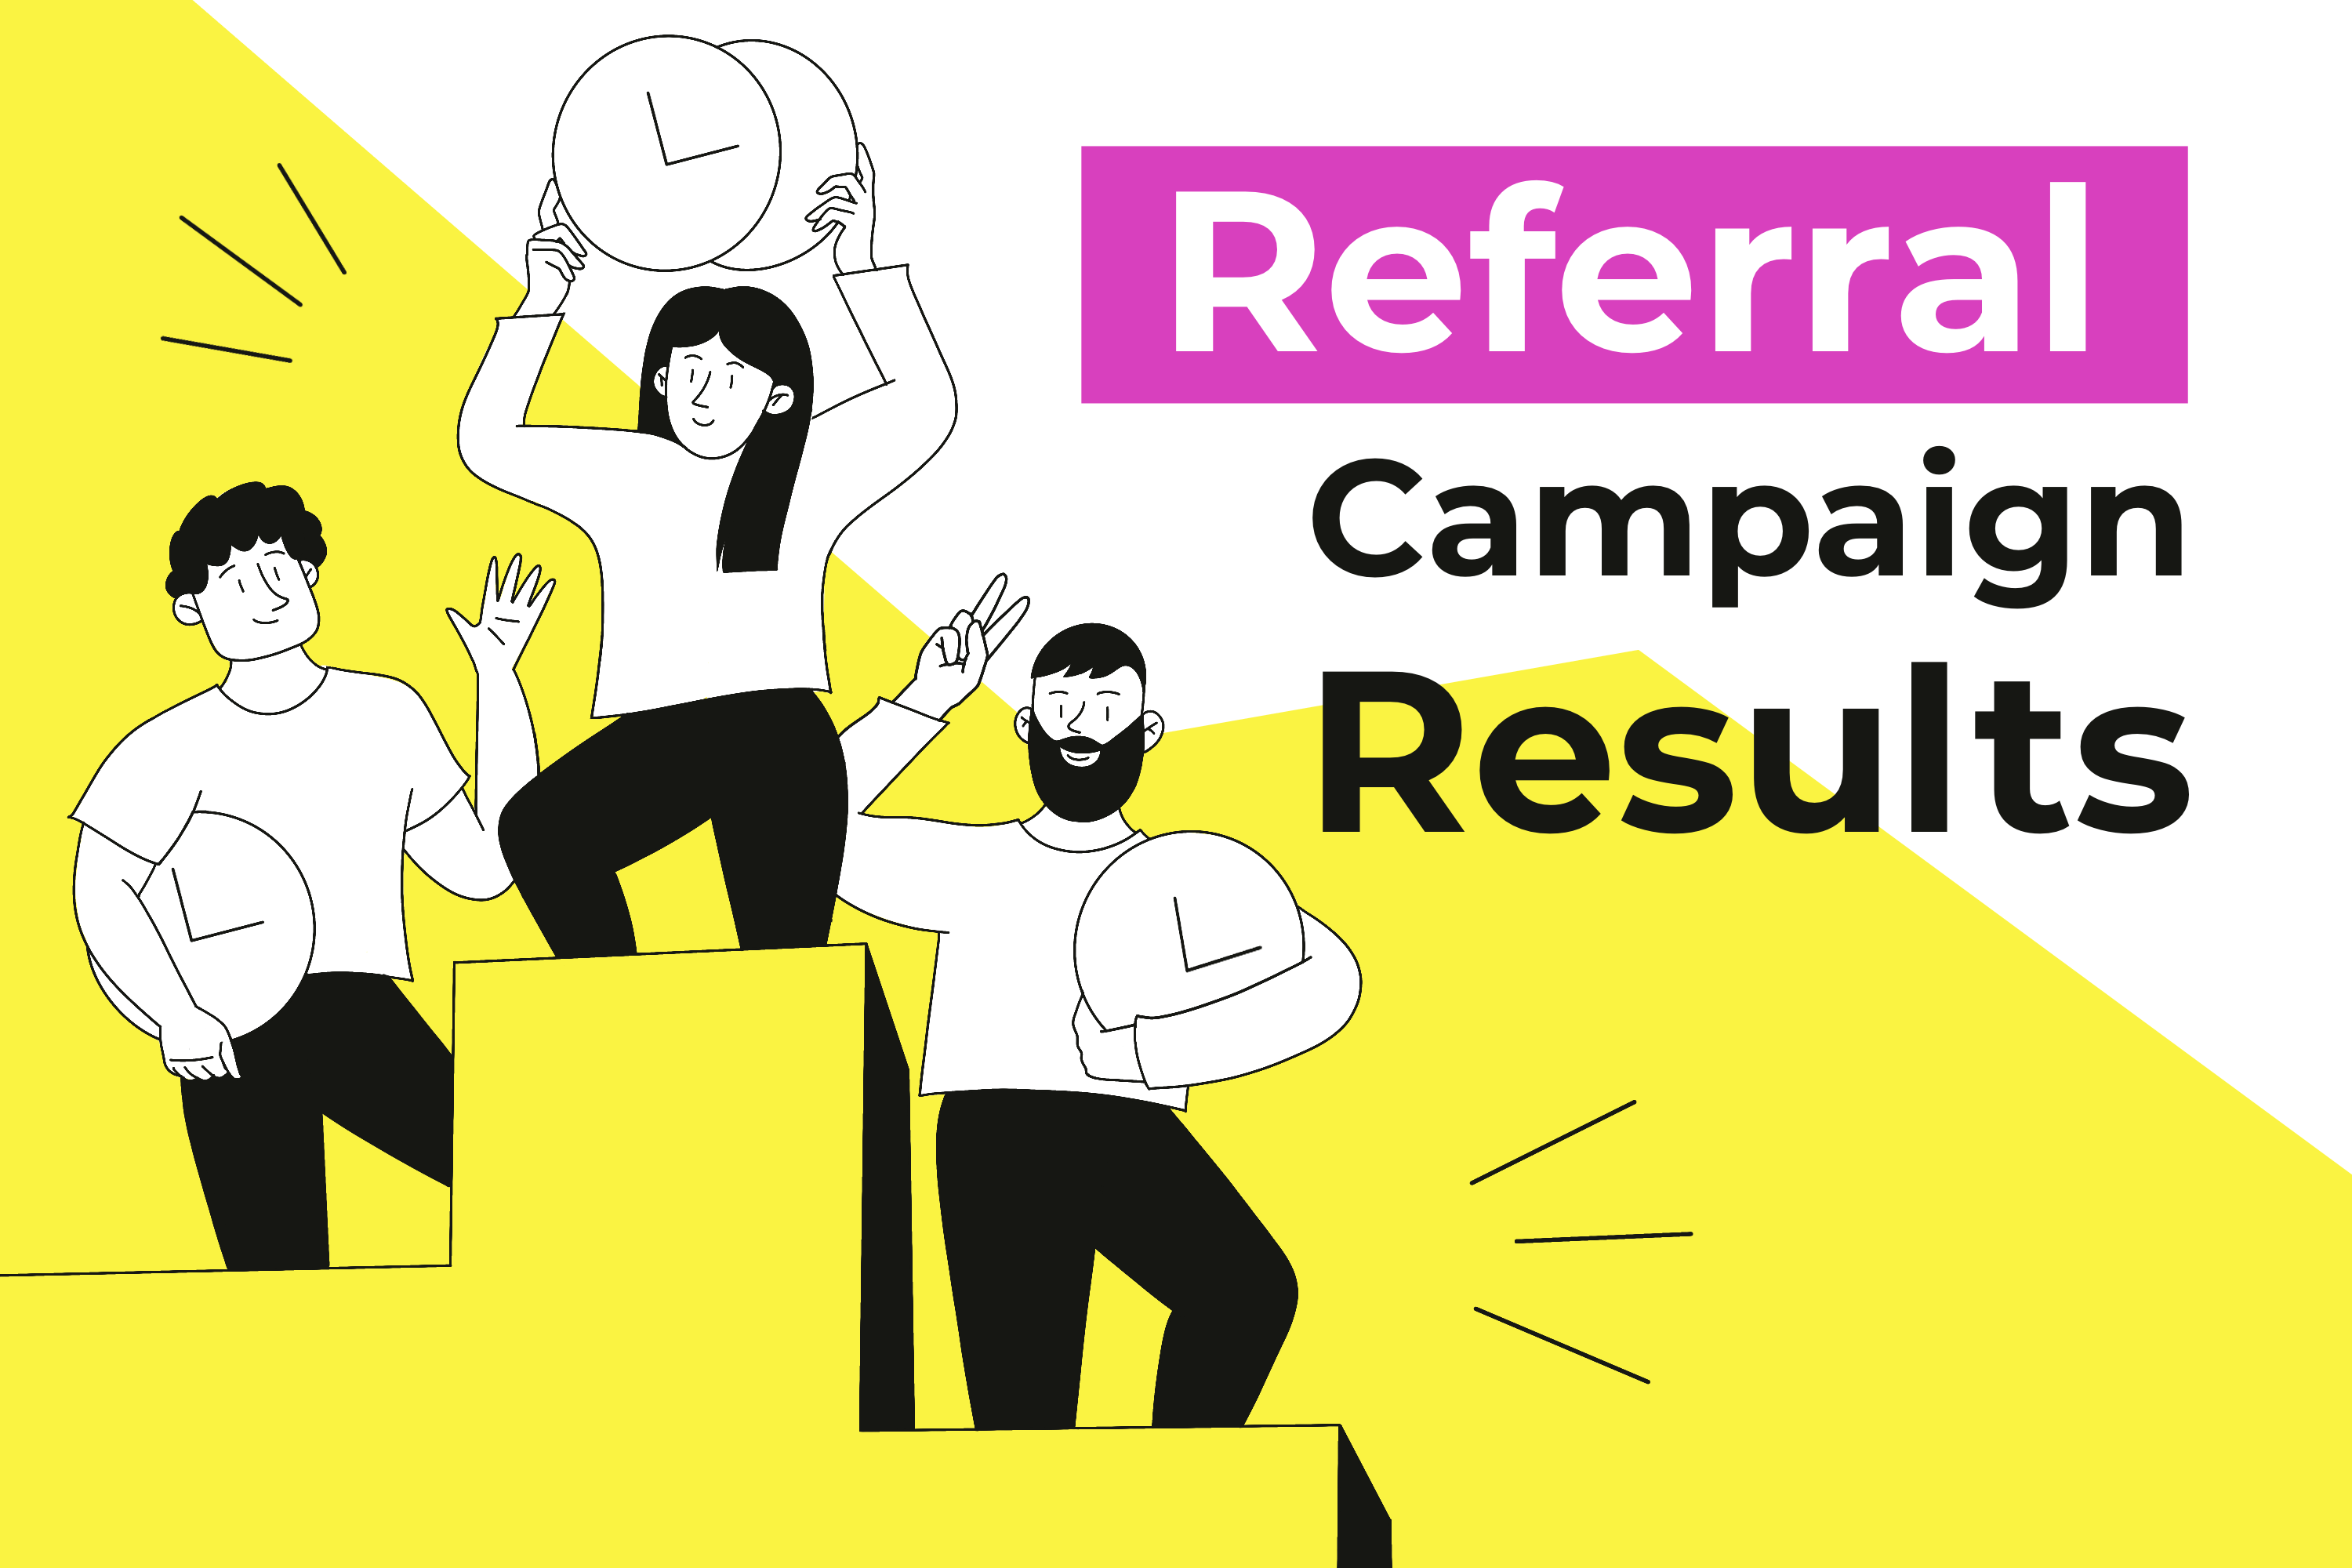 LaborX referral campaign results announced!